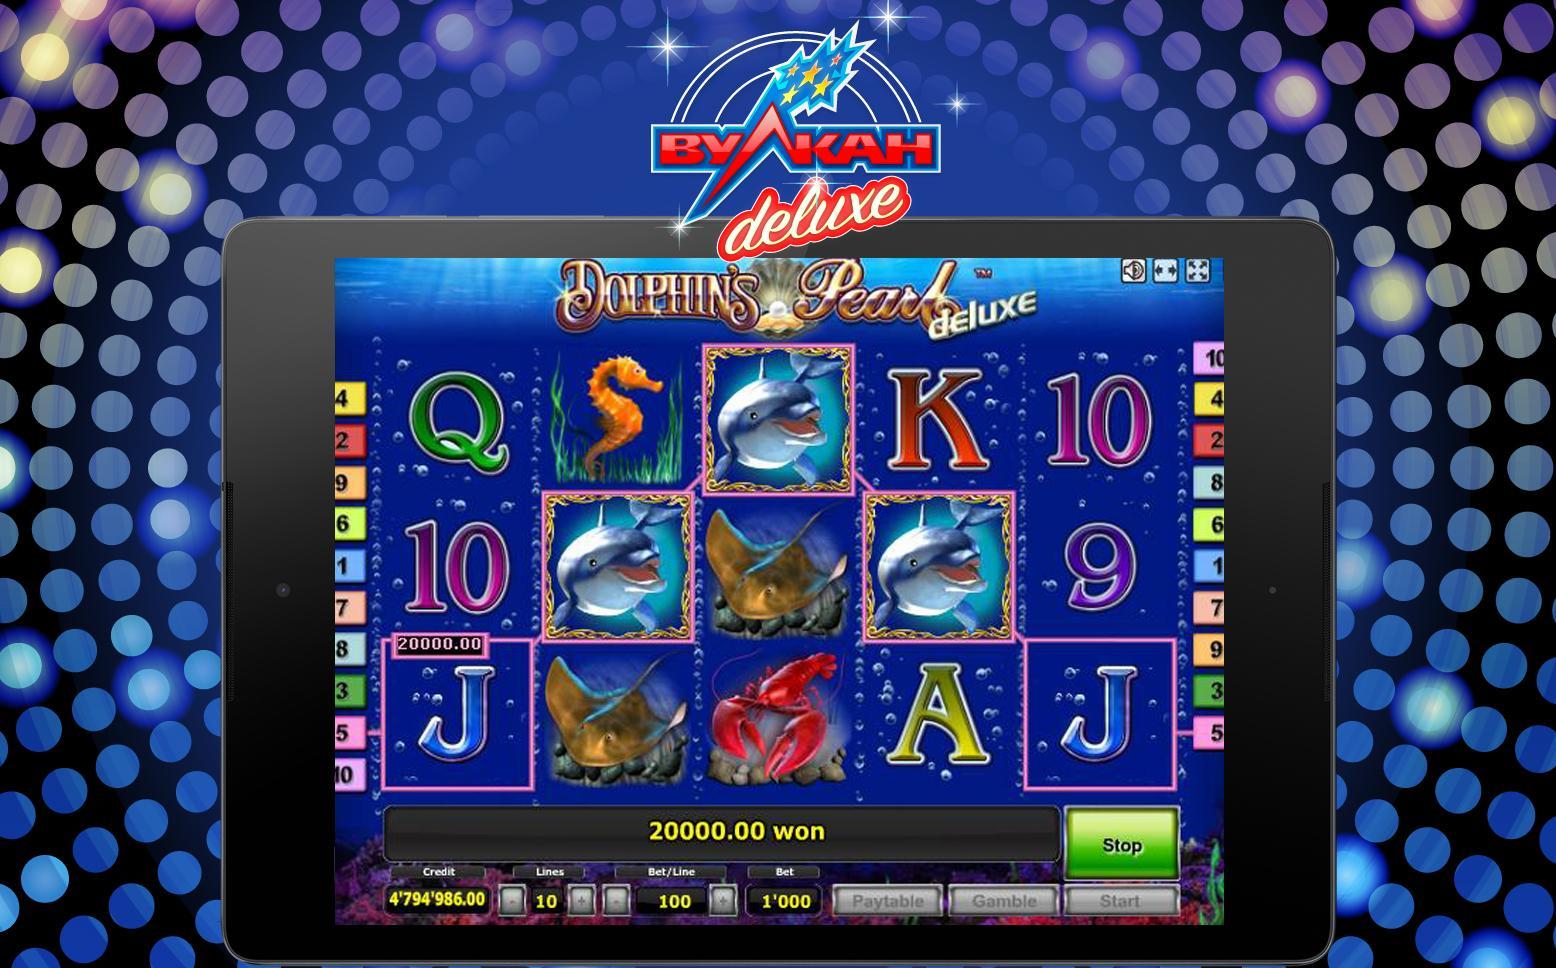 Вулкан делюкс игровые автоматы играть бесплатно онлайн какой казино вулкан лучше